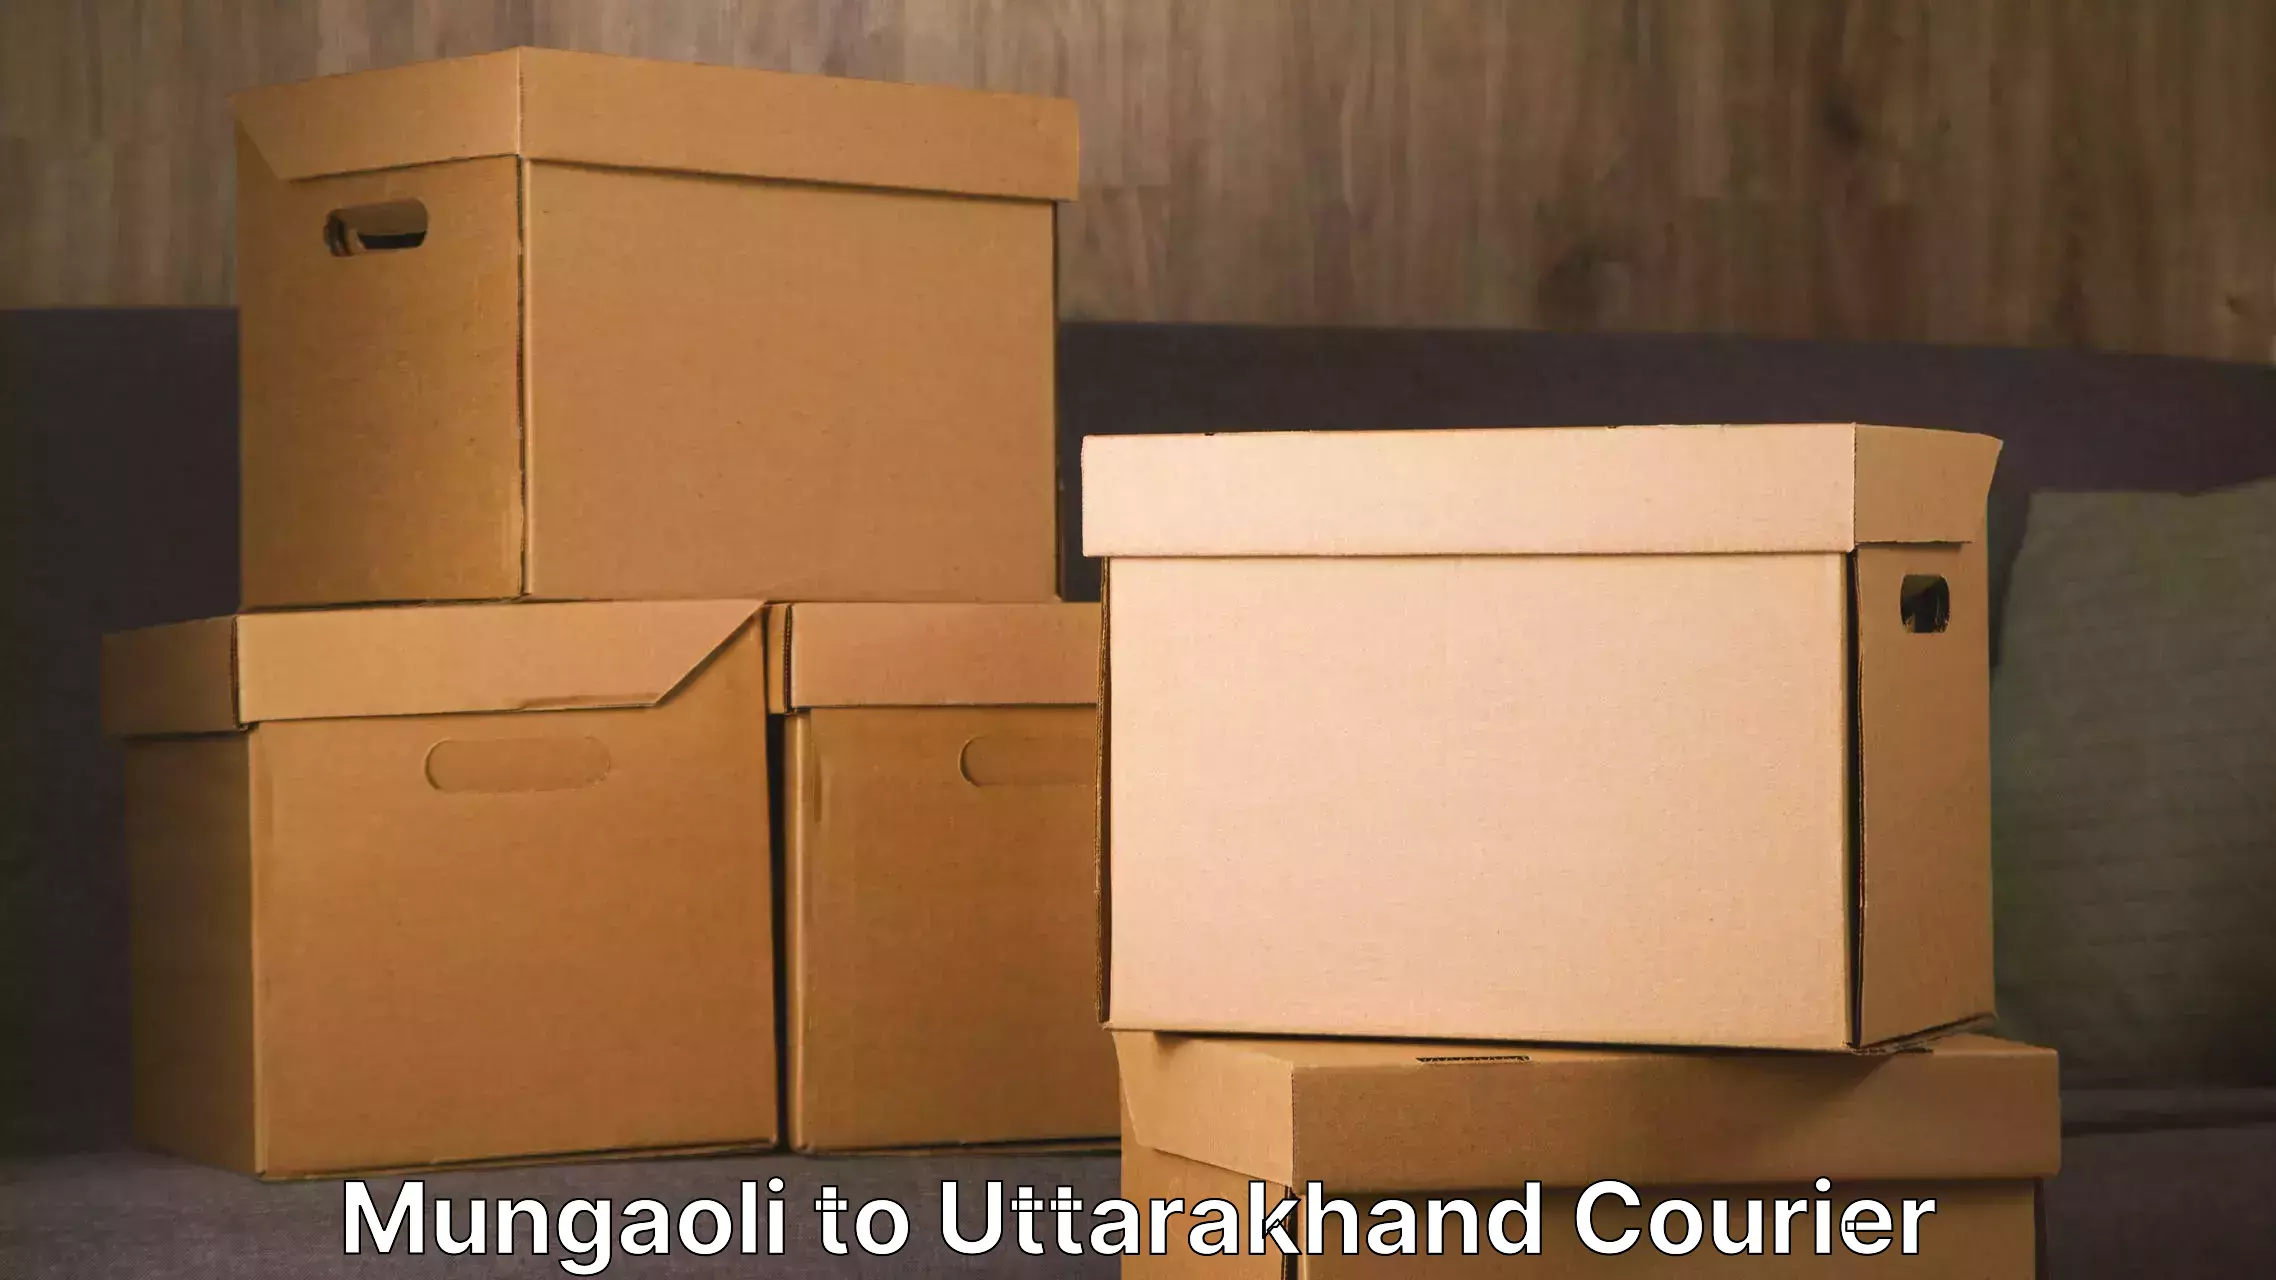 Moving and handling services Mungaoli to Srinagar Pauri Garhwal